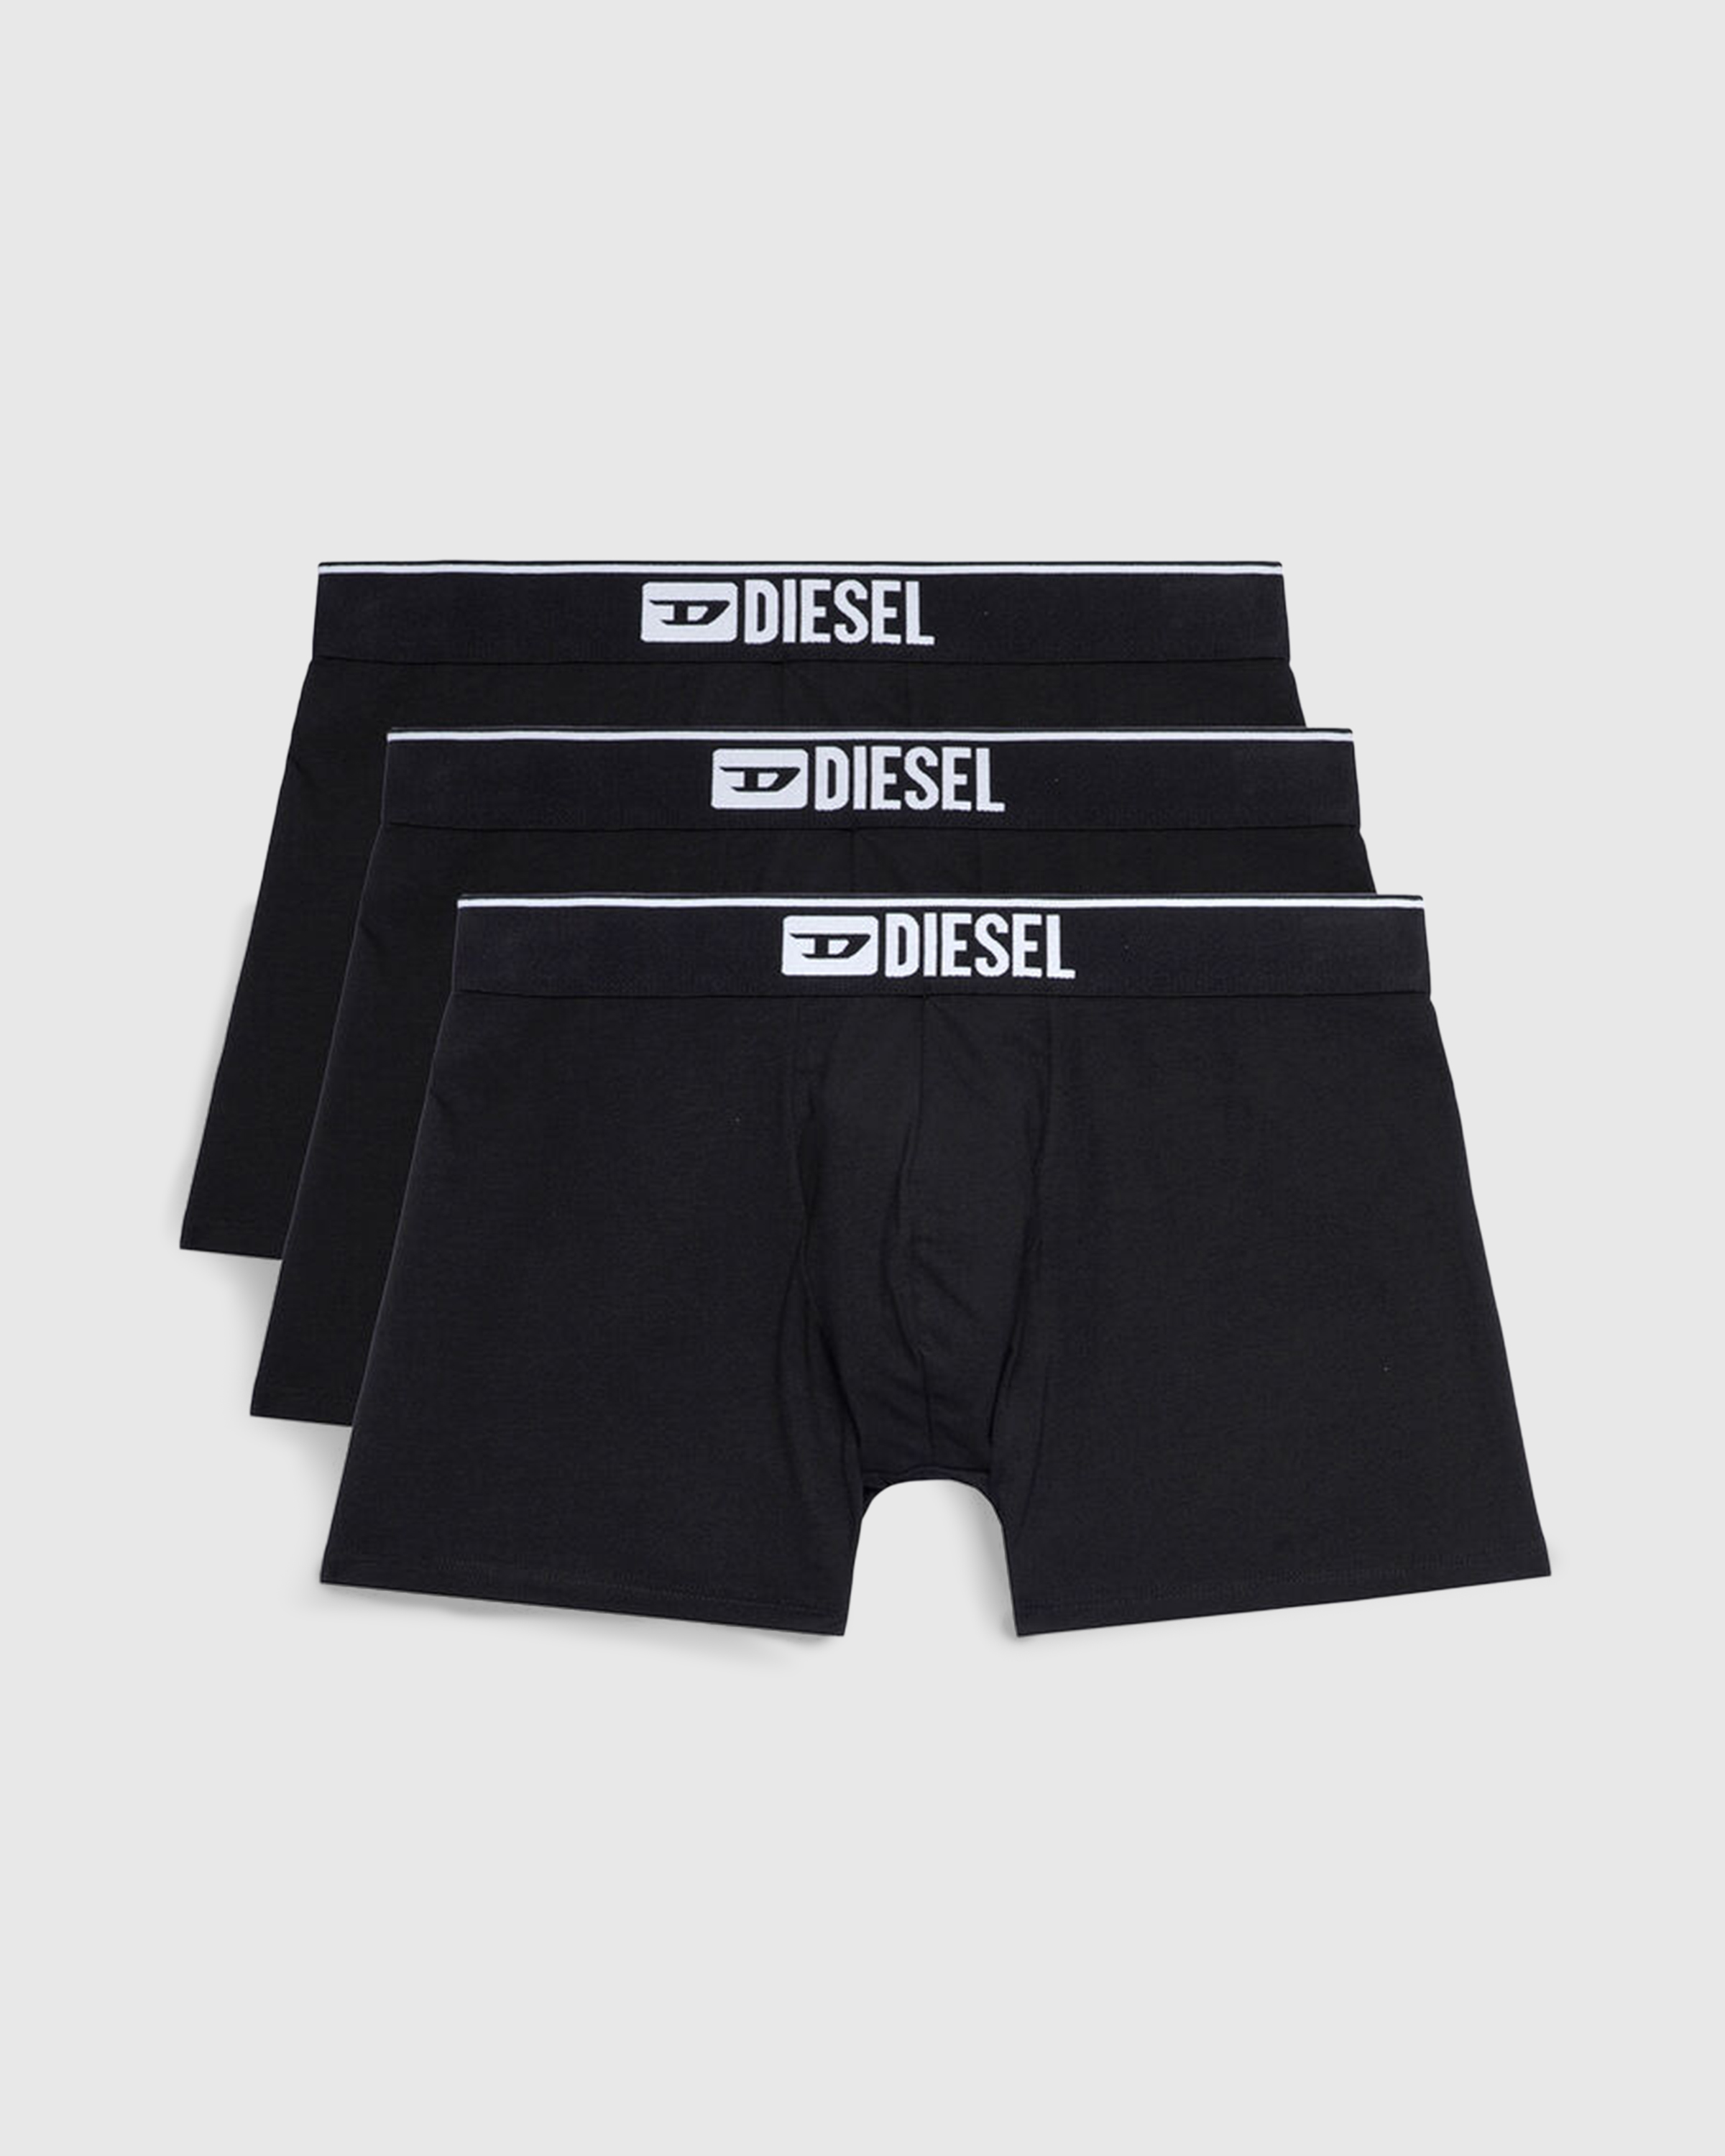 Diesel – Umbx-Sebastian Three-Pack Boxer Briefs Black - Underwear & Loungewear - Black - Image 1